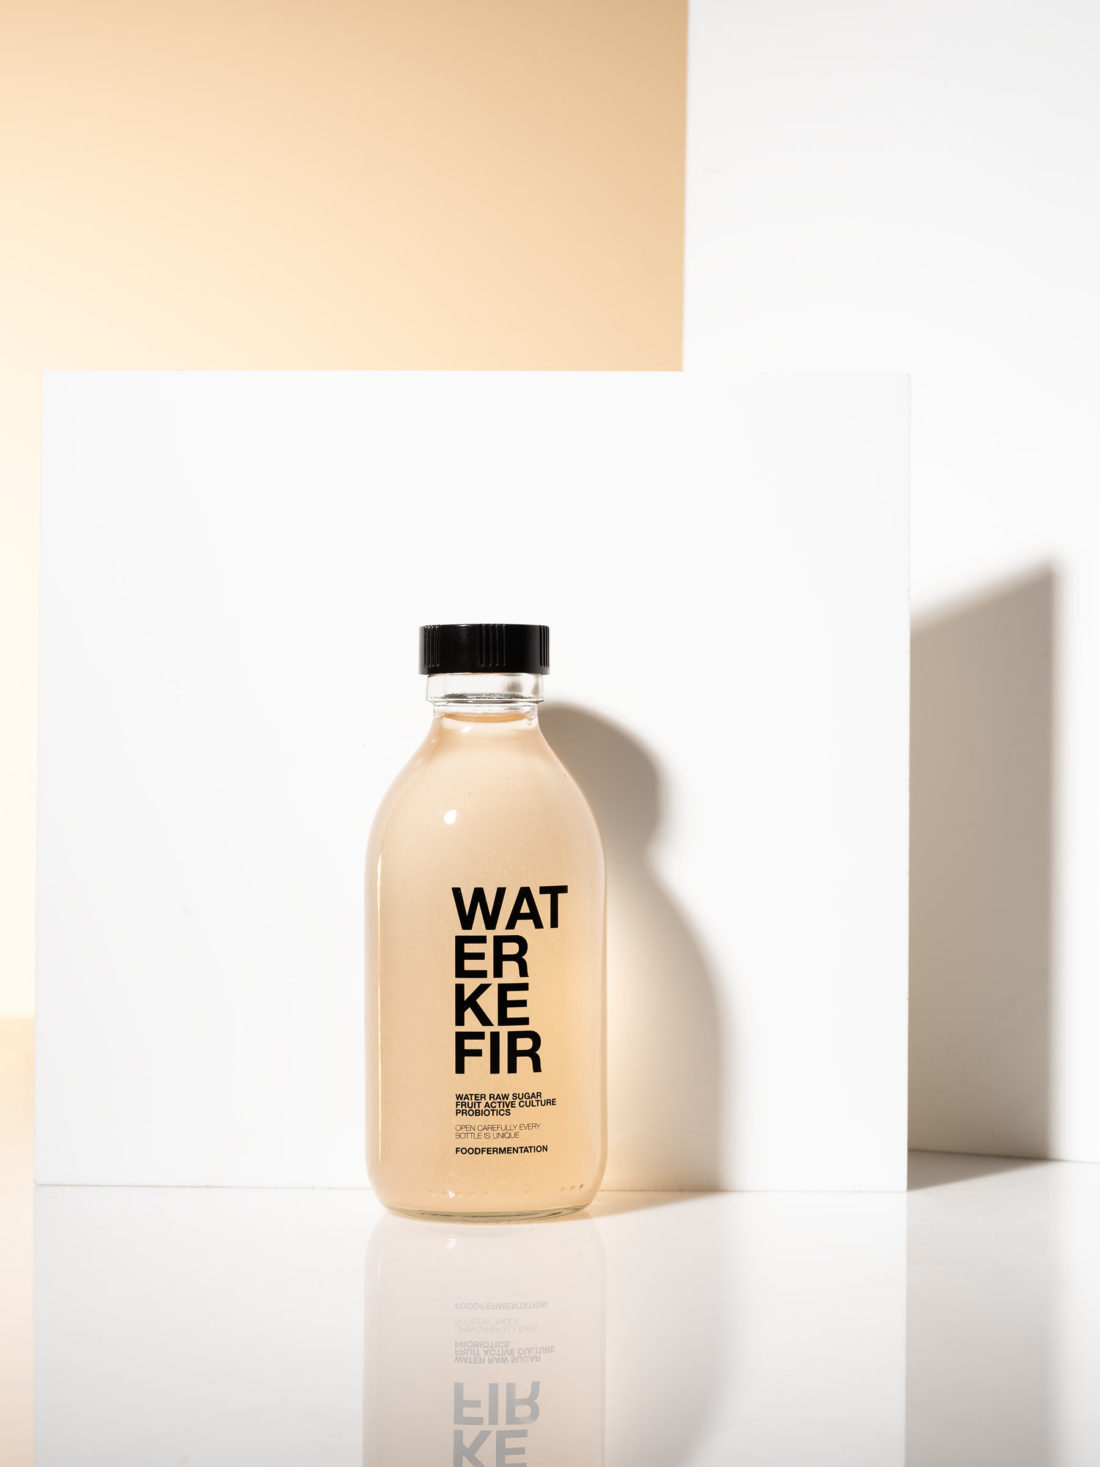 Water kefir flaska fotograferad i studio med skuggspel